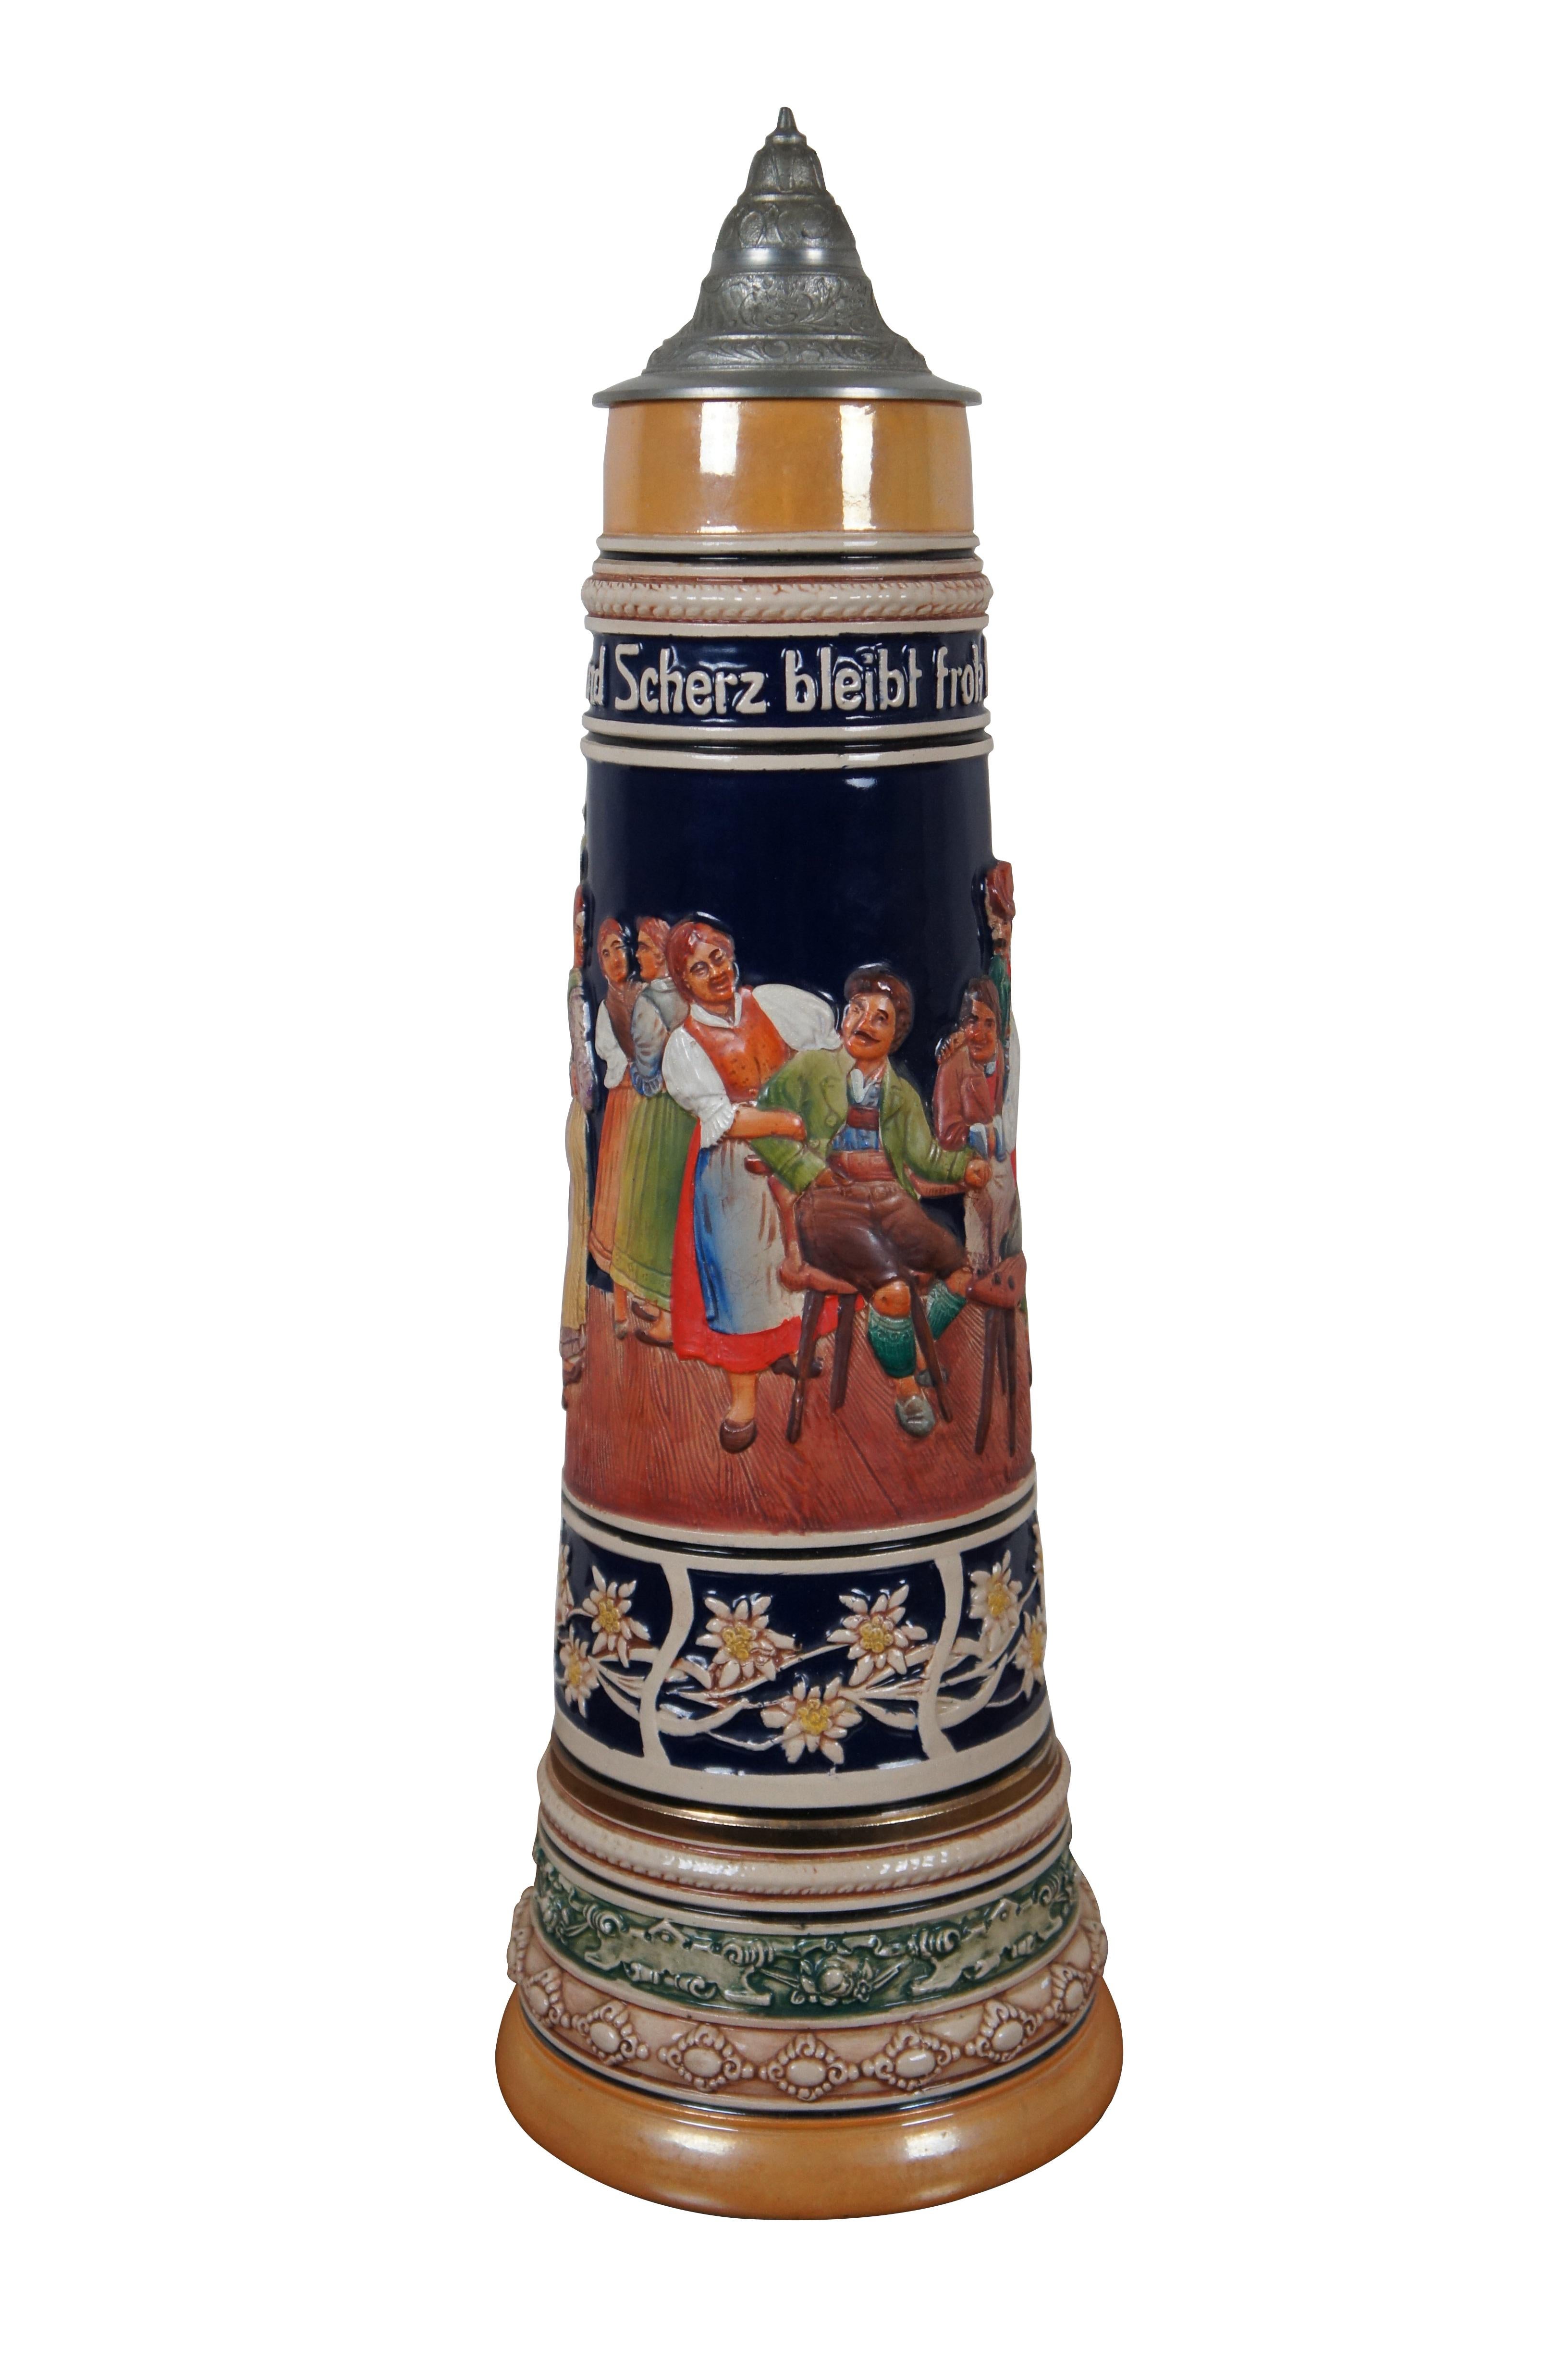 Sehr großer 4-Liter-Keramik-Bierkrug von Gerz aus der Mitte des 20. Jahrhunderts. Dekoriert mit einer Tavernenszene, Bändern mit floralen Motiven und einem gedrehten Branch-Griff. Auf dem Band oben steht 